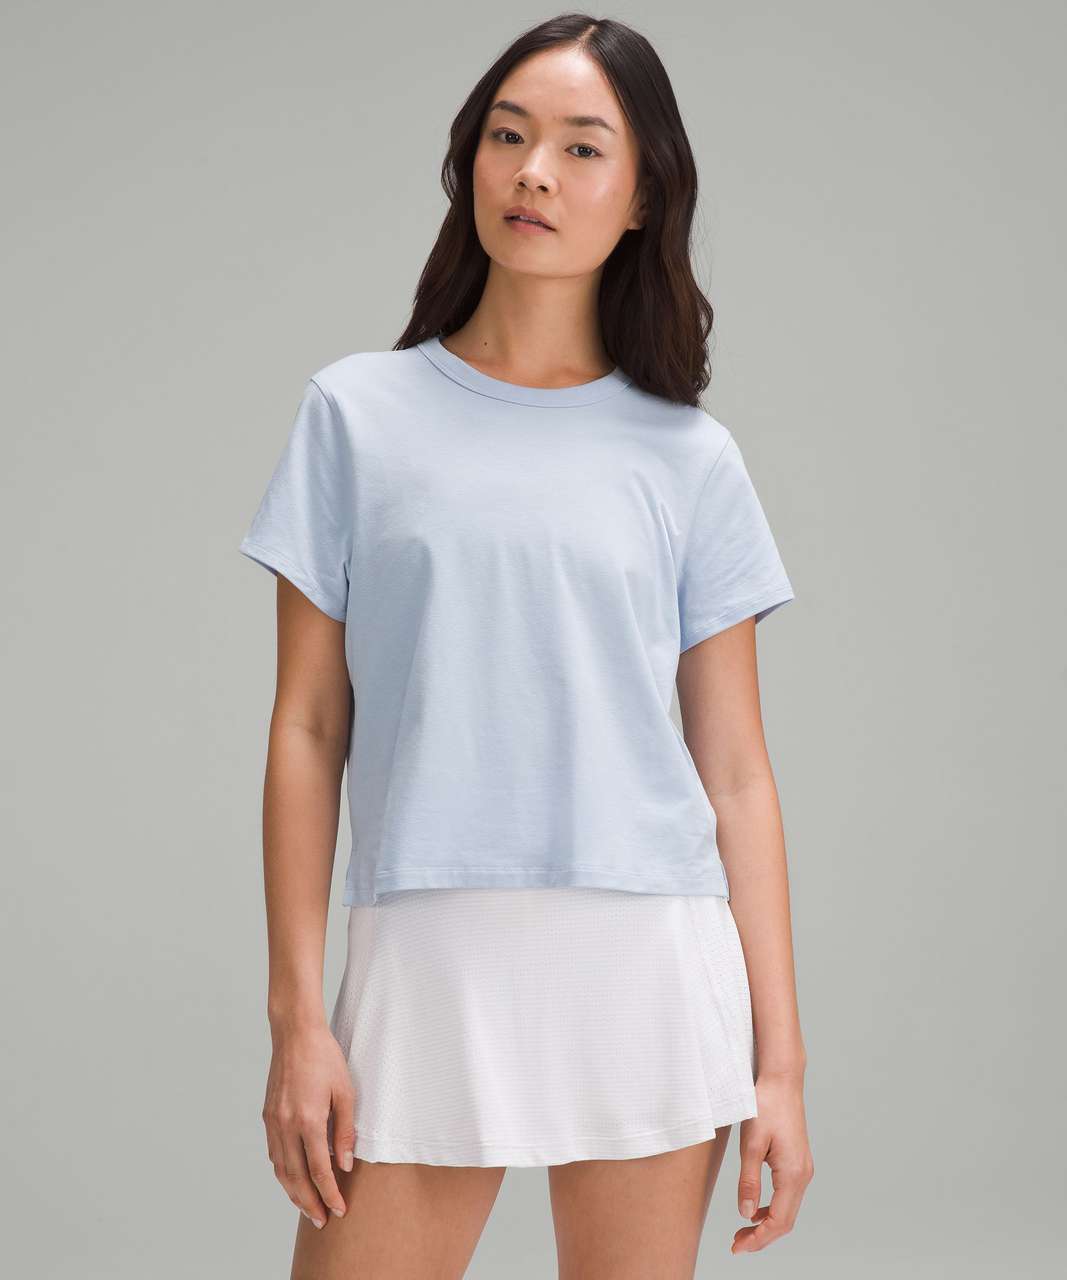 Lululemon Classic-Fit Cotton-Blend T-Shirt - Blue Linen